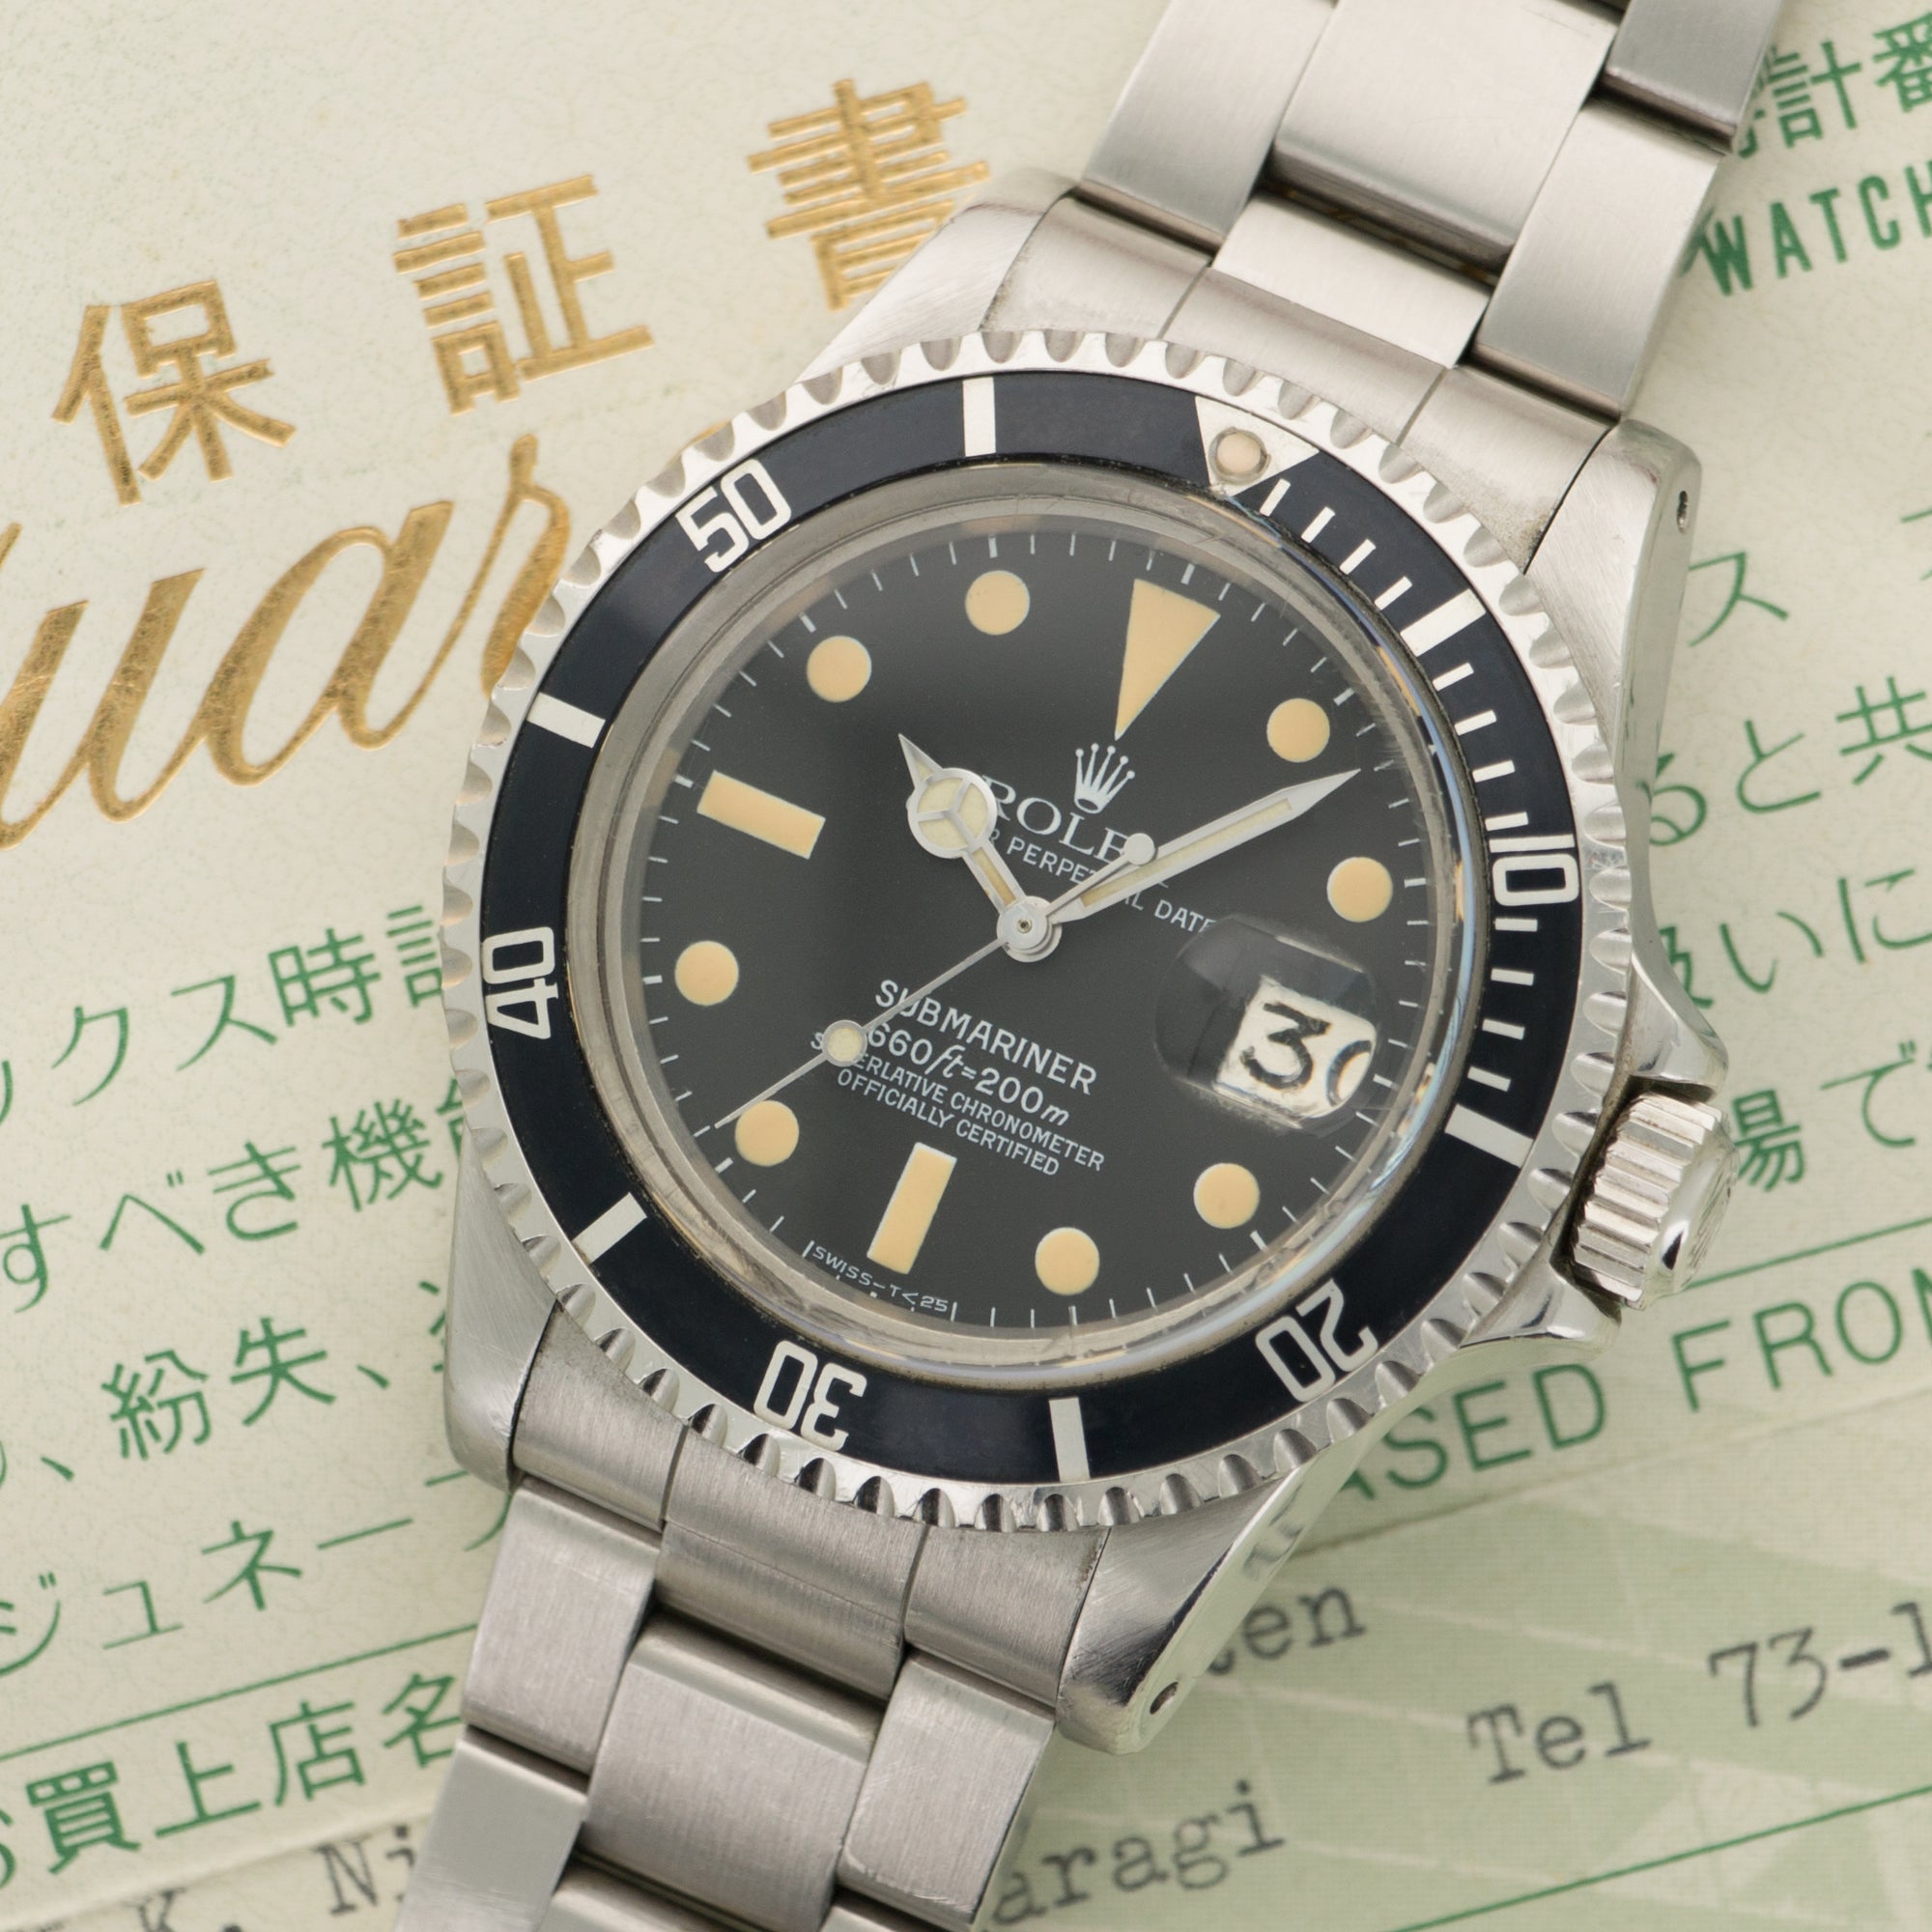 Rolex Steel Submariner Watch Ref. 1680 with Paper